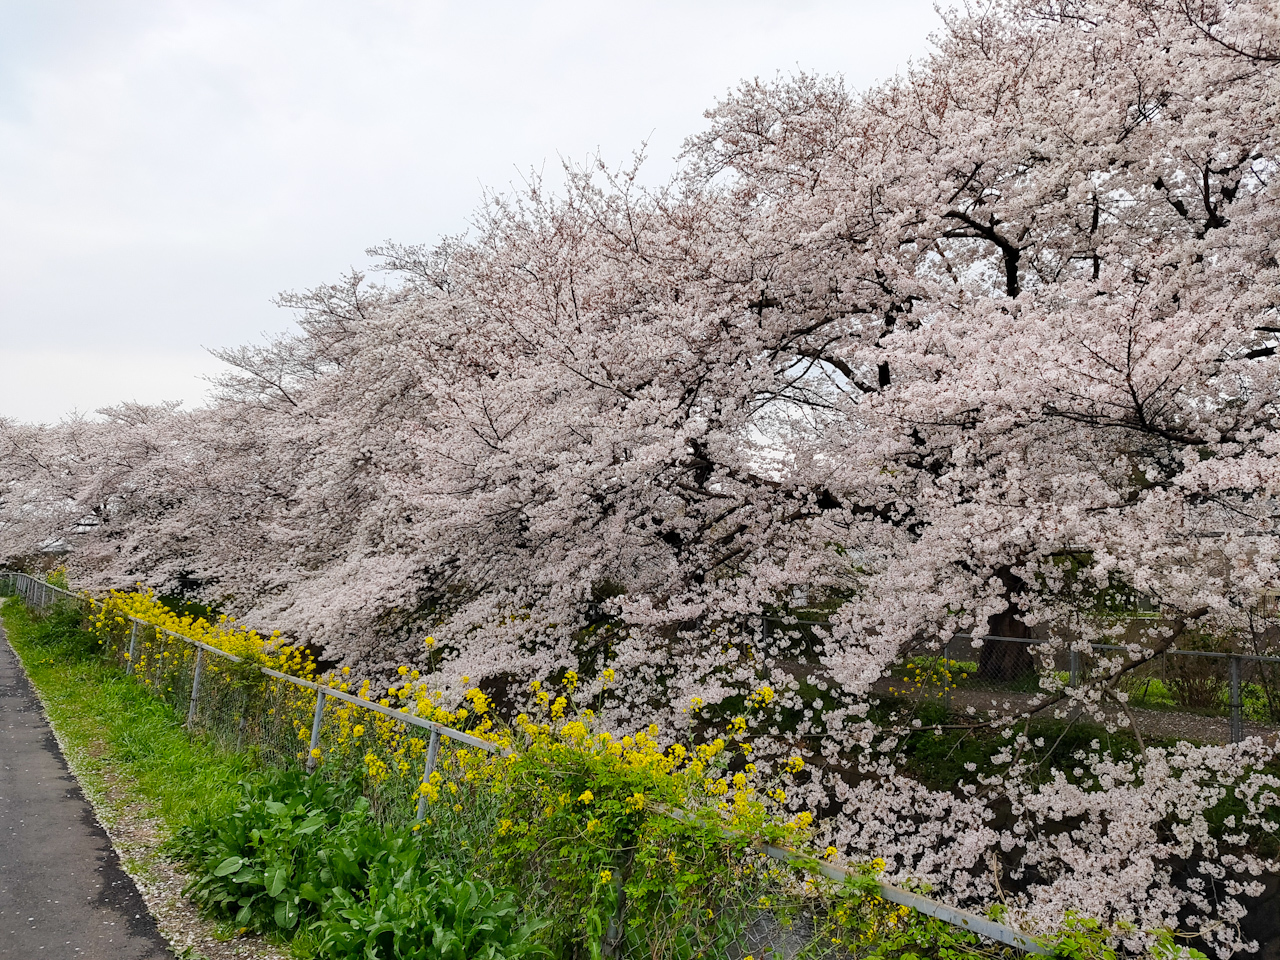 桜と菜の花が並んで咲いている場所もあります